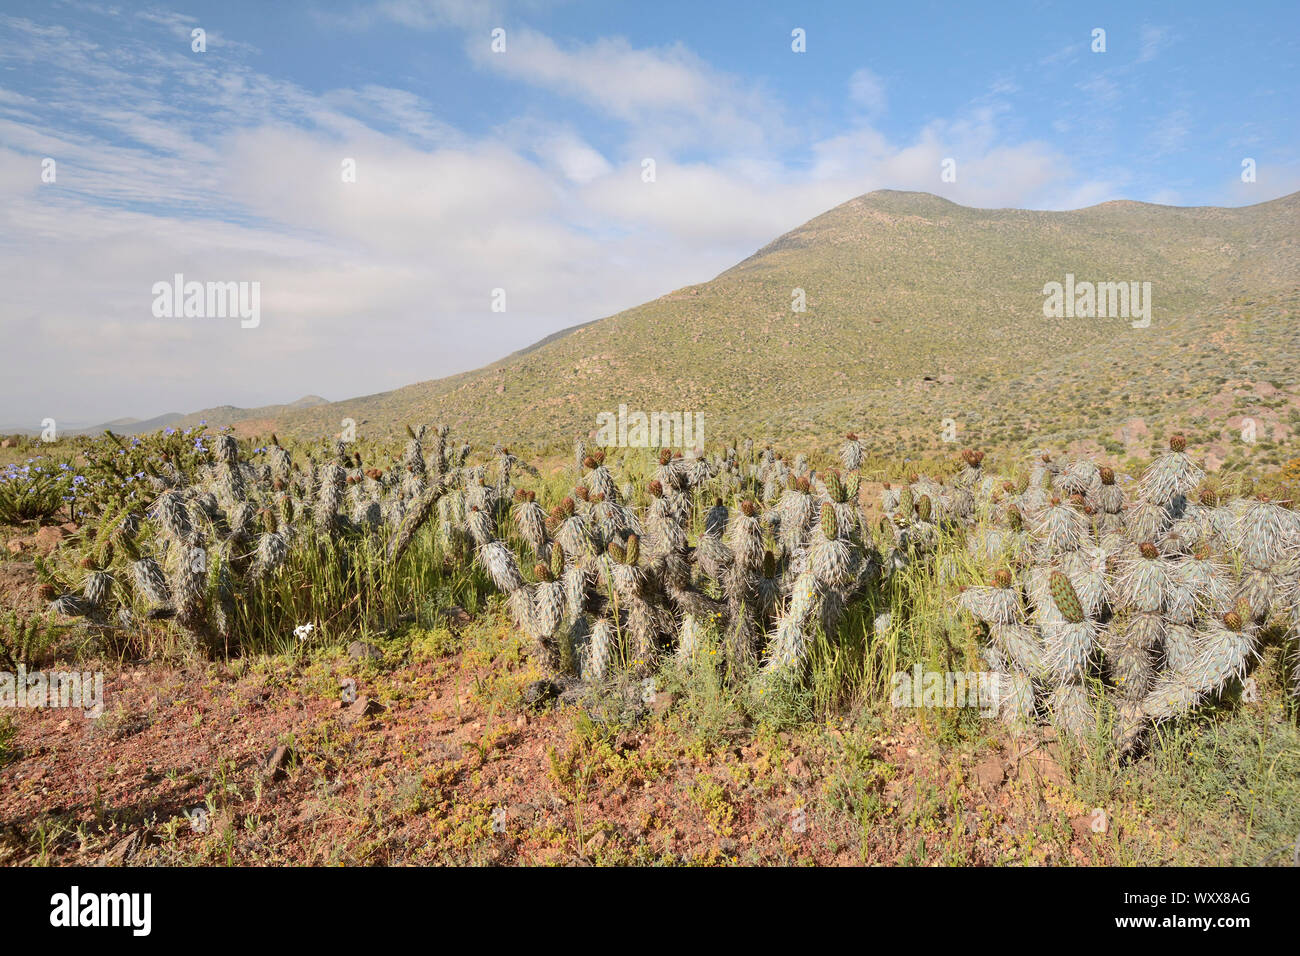 Tunilla (Miqueliopuntia miquelii), Cactaceae indigenous to Chile, ca. of Freirina, III Region of Atacama, Chile Stock Photo